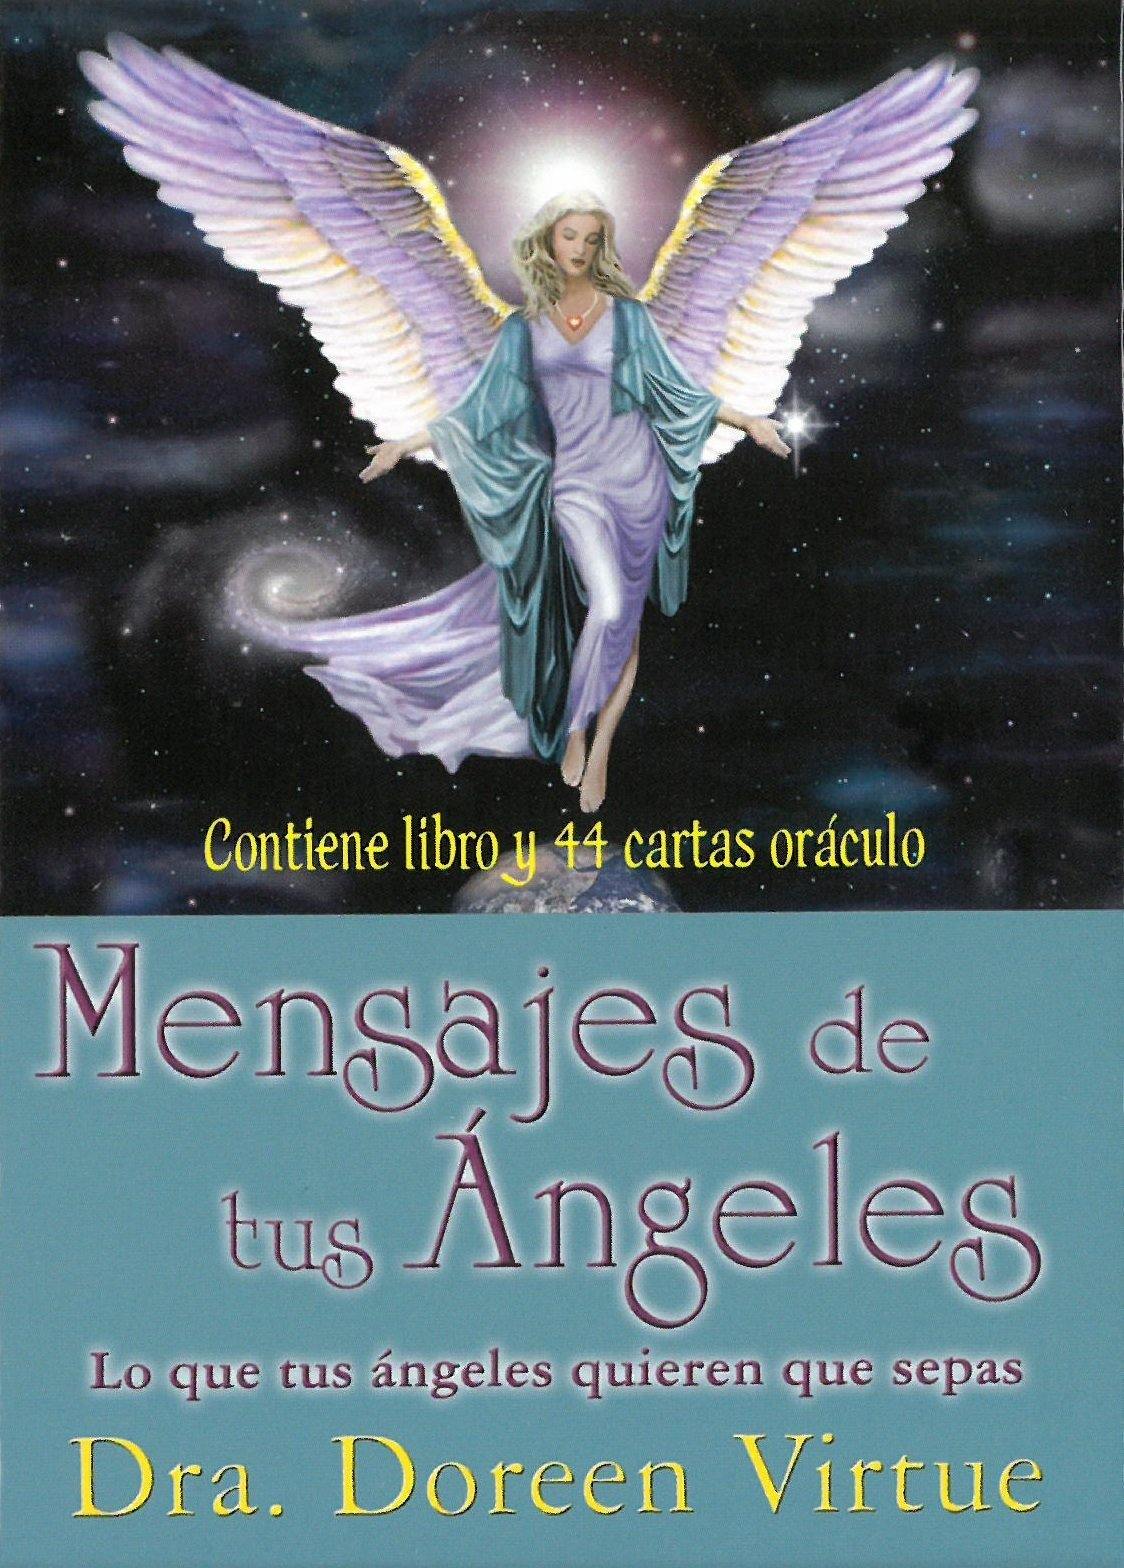 Cartas de oráculo mensajes de tus ángeles - Antevasin's Store